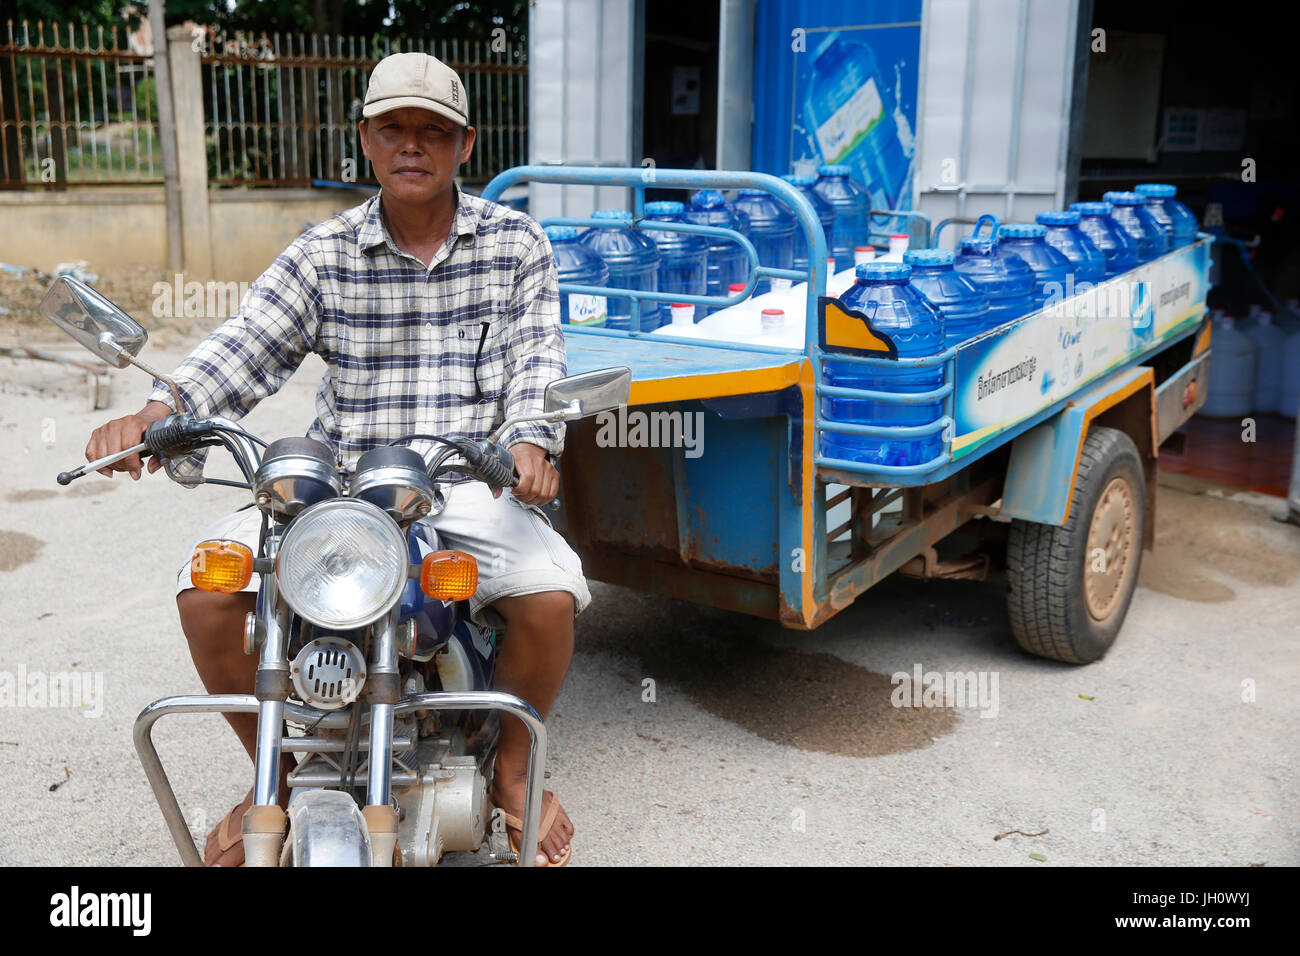 1001 Fontane acqua società dipendente alla guida di un carrello per la consegna. Cambogia. Foto Stock